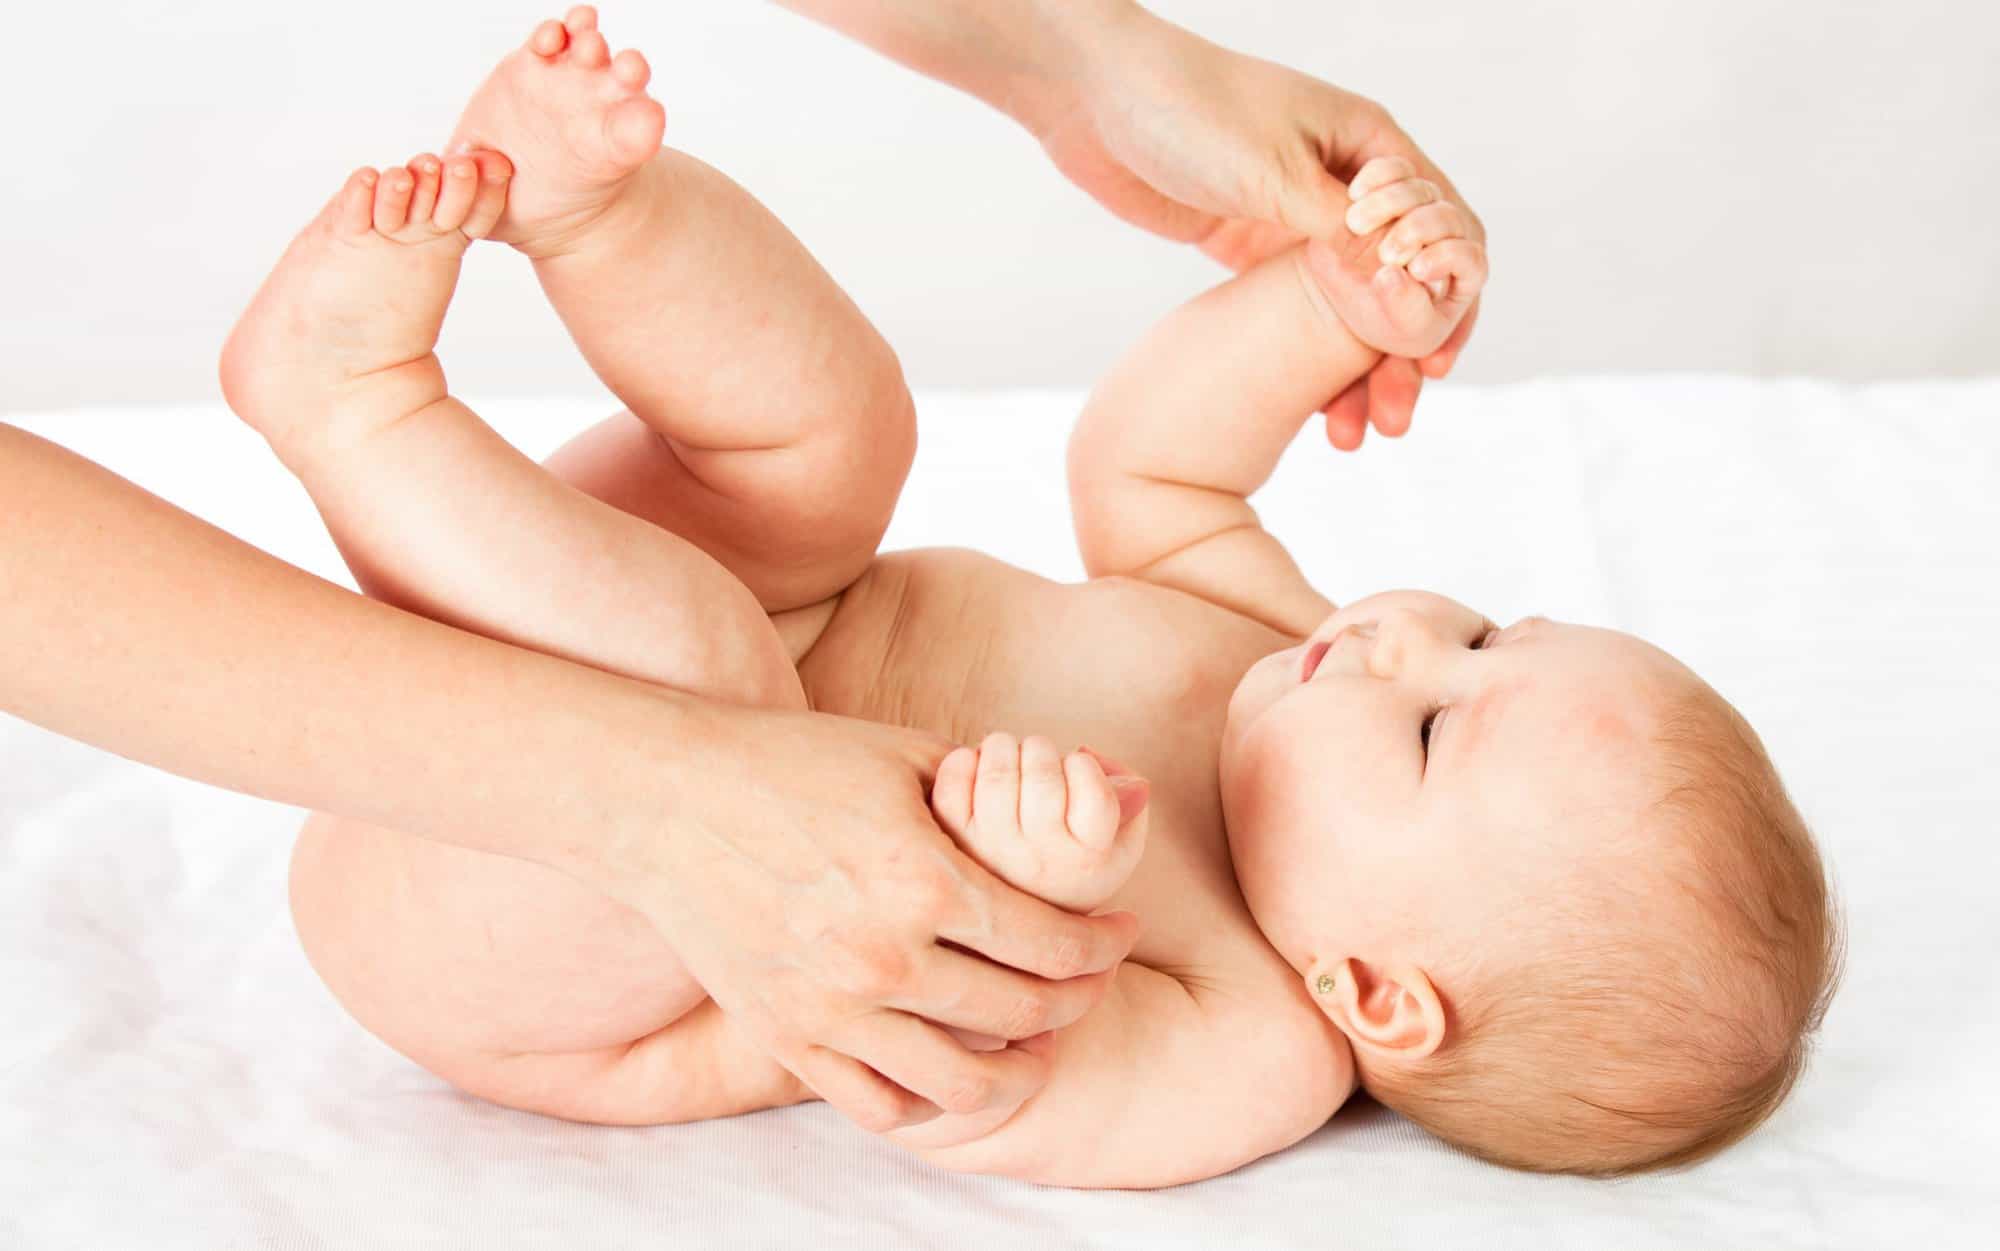 Cuidado dos semanas A tiempo Pendientes en bebés, ¿poner o no poner? - Criar con Sentido Común